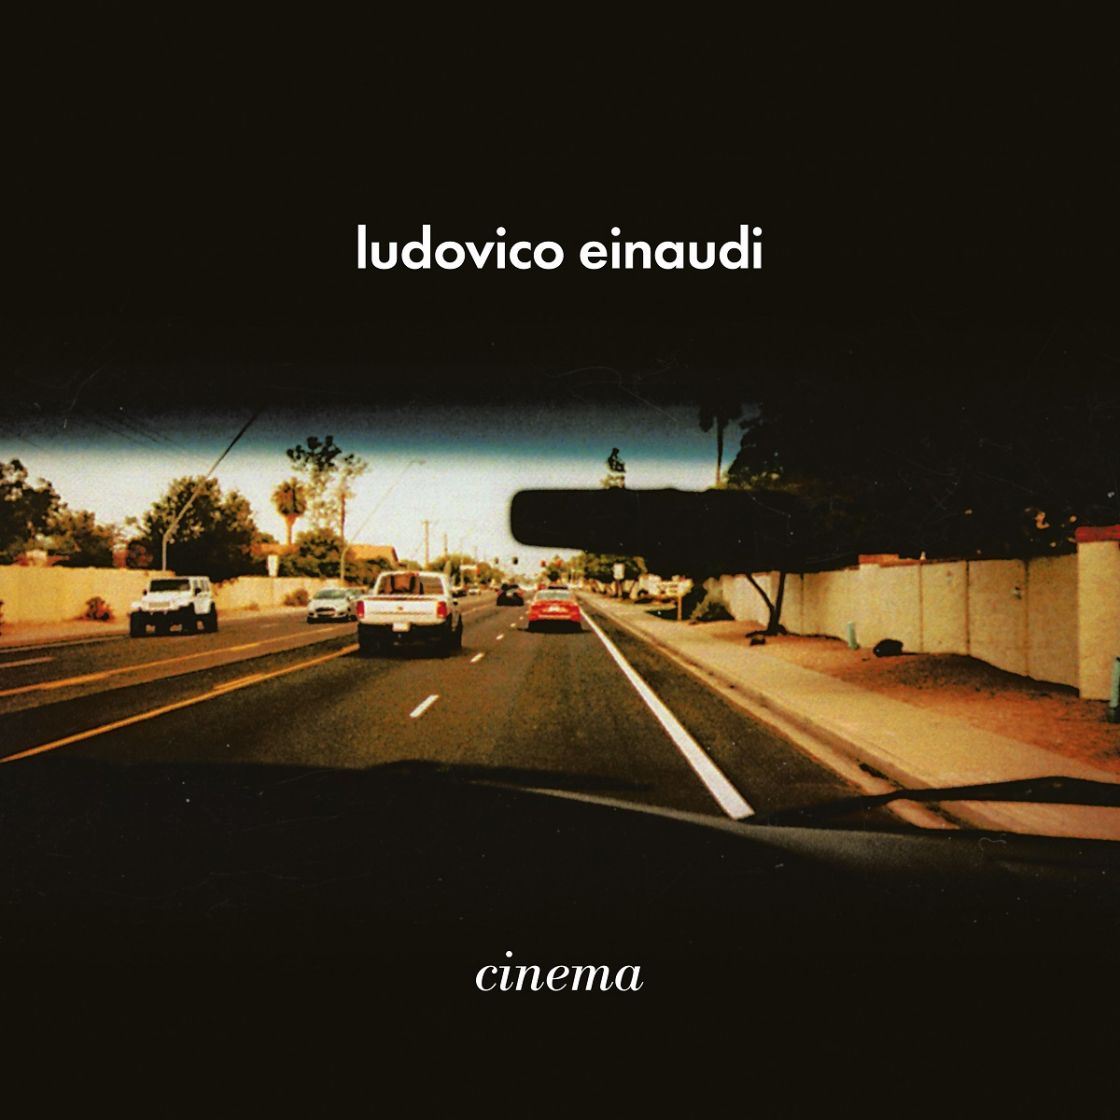 LUDOVICO EINAUDI  zapowiada nowy album  CINEMA